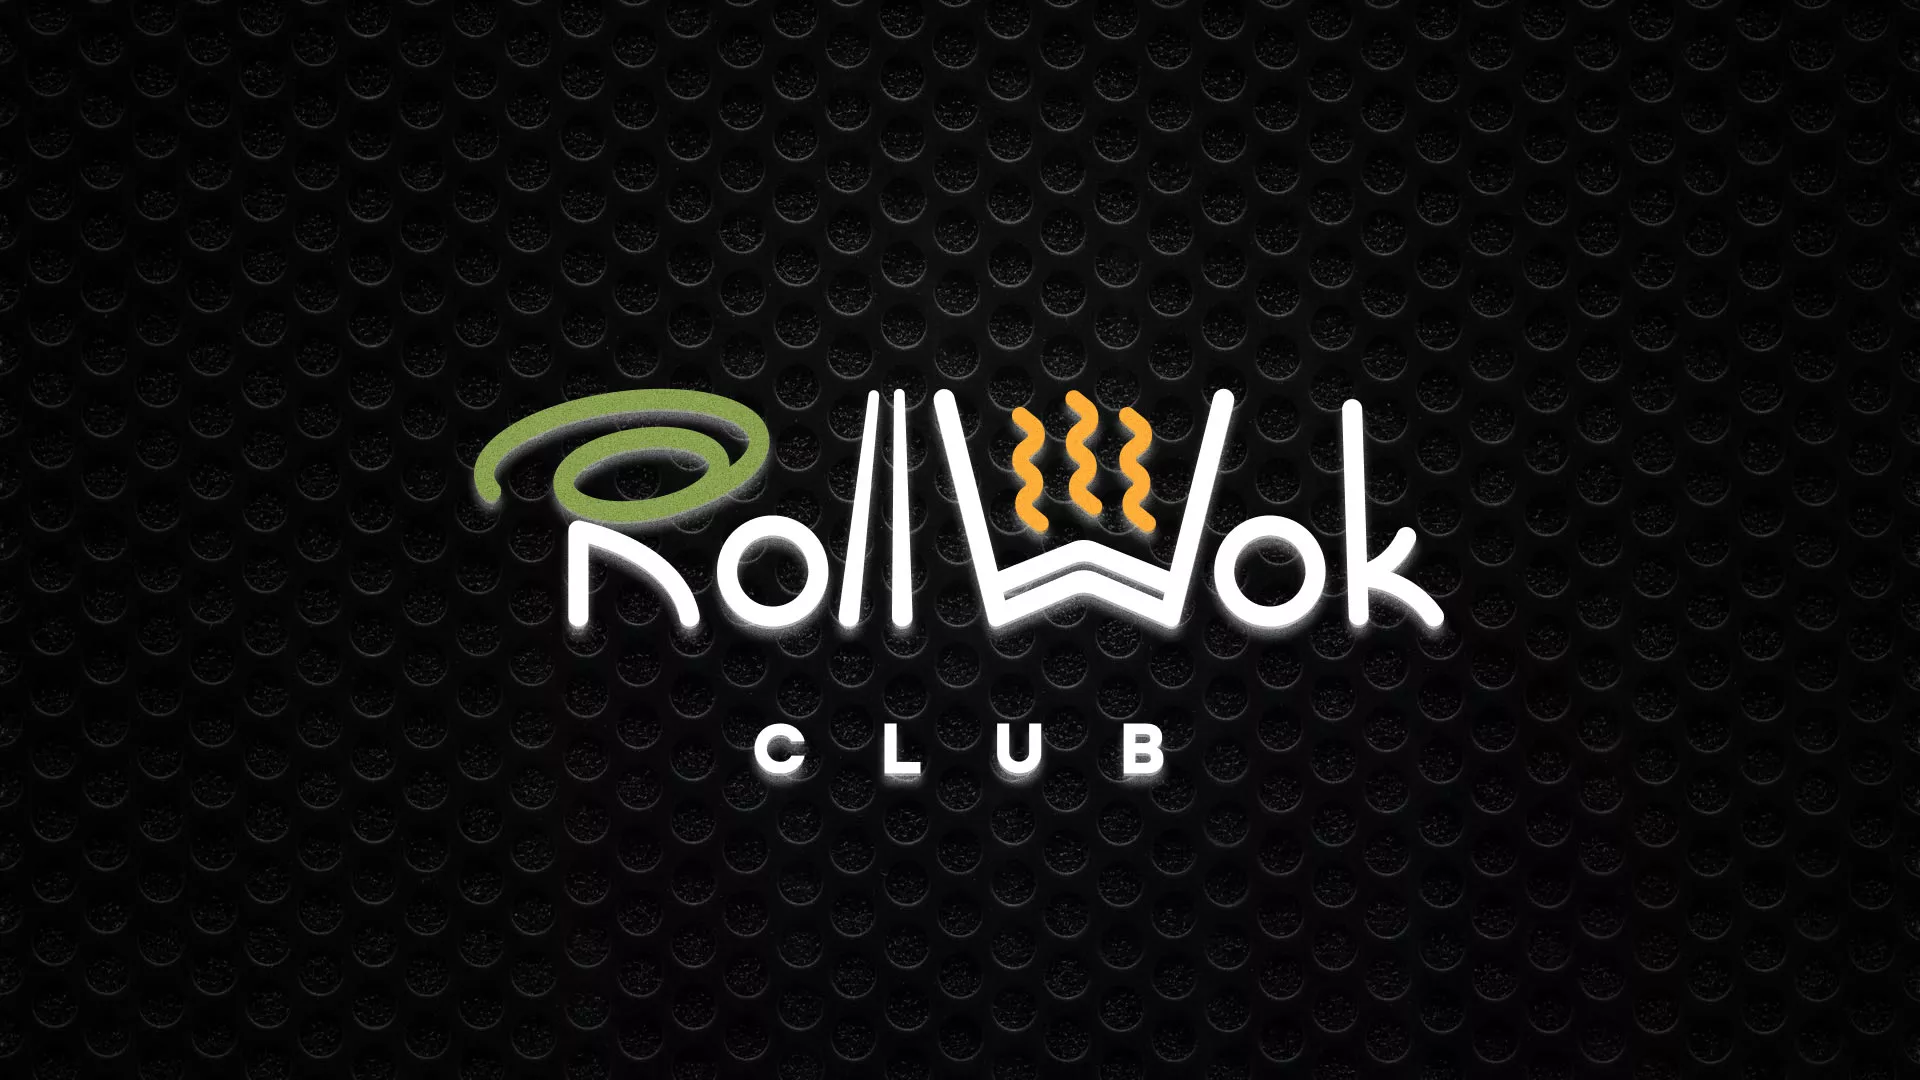 Брендирование торговых точек суши-бара «Roll Wok Club» в Новопавловске